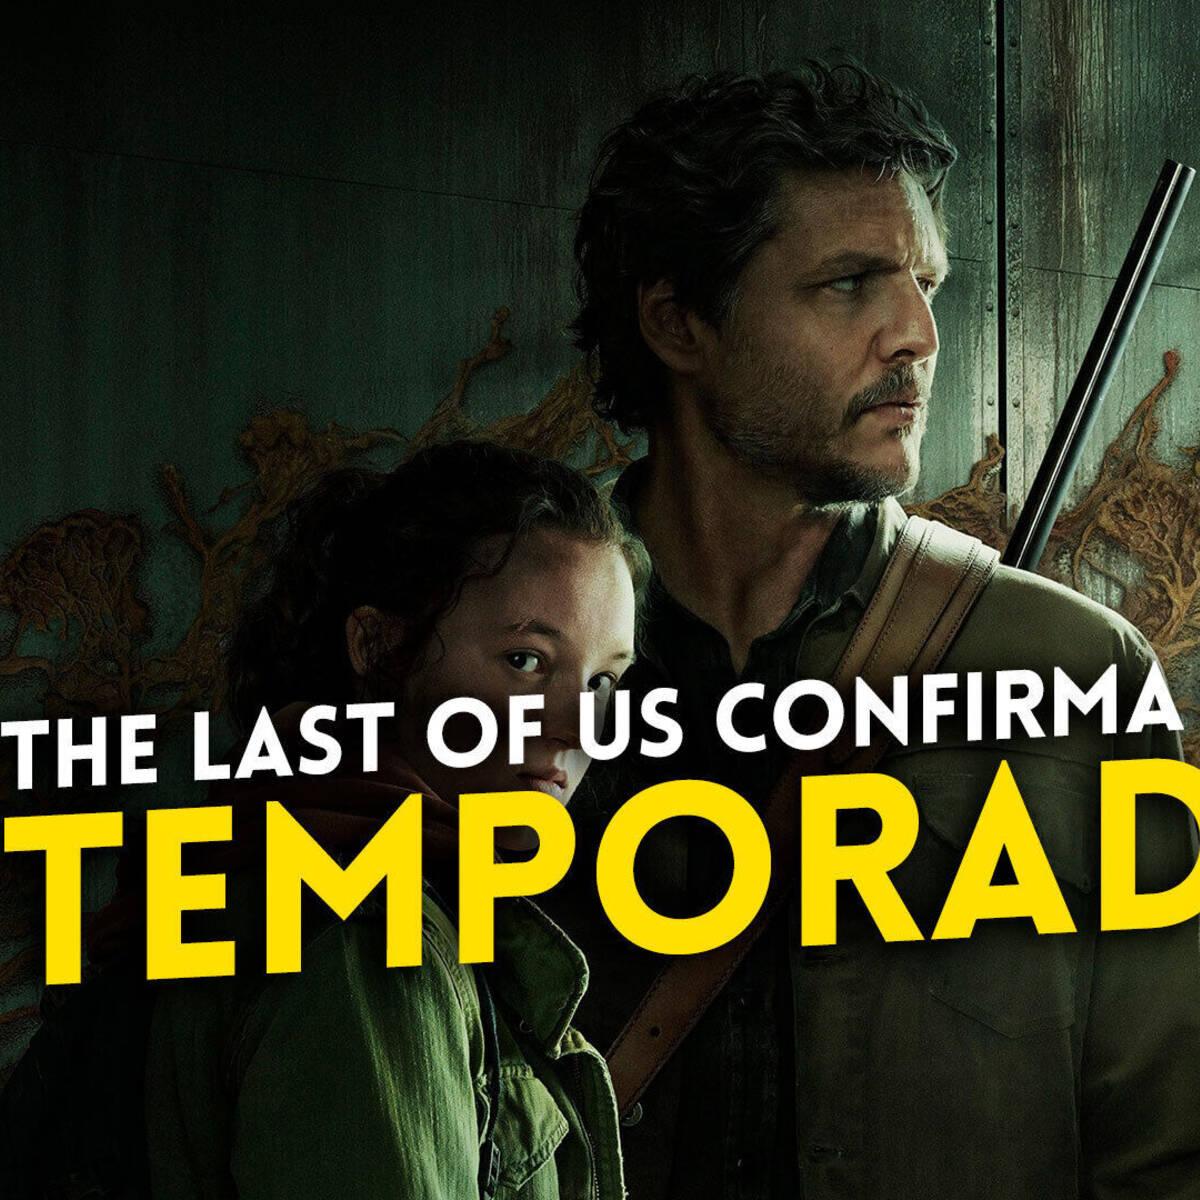 The Last of Us Temporada 2: HBO confirma que la serie renueva por otra  temporada - Vandal